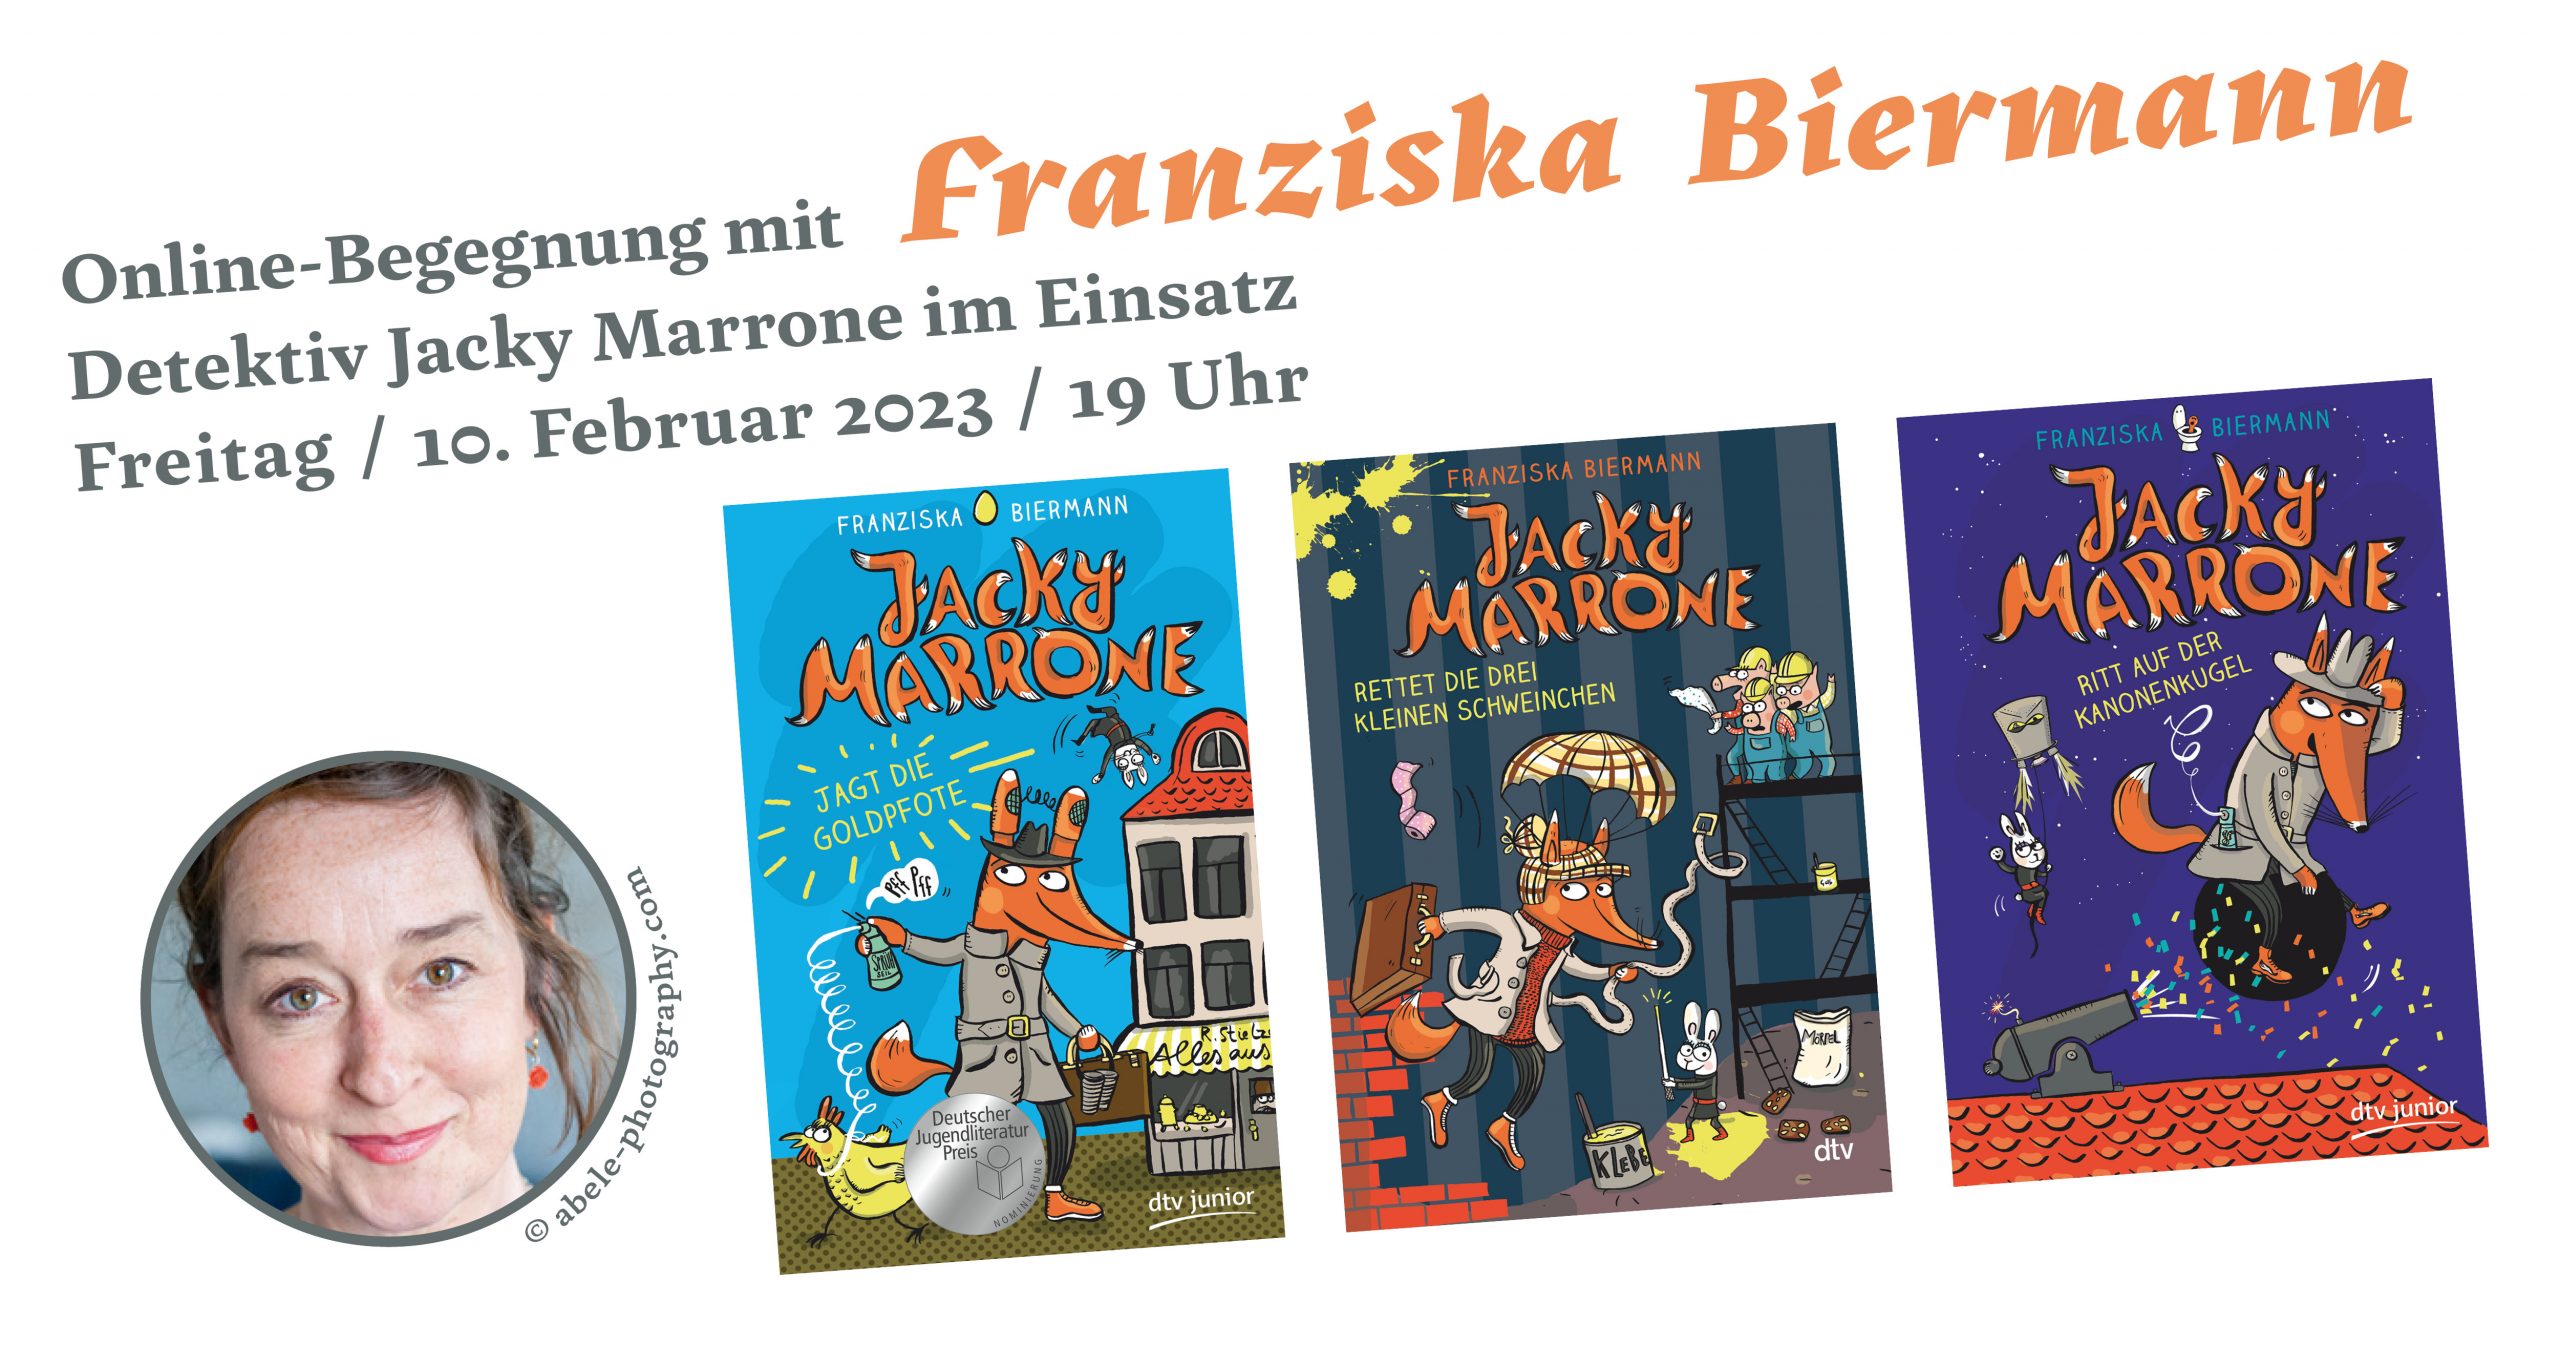 Detektiv Jacky Marrone im Einsatz - Online-Begegnung mit Franziska Biermann (10.02.2023)